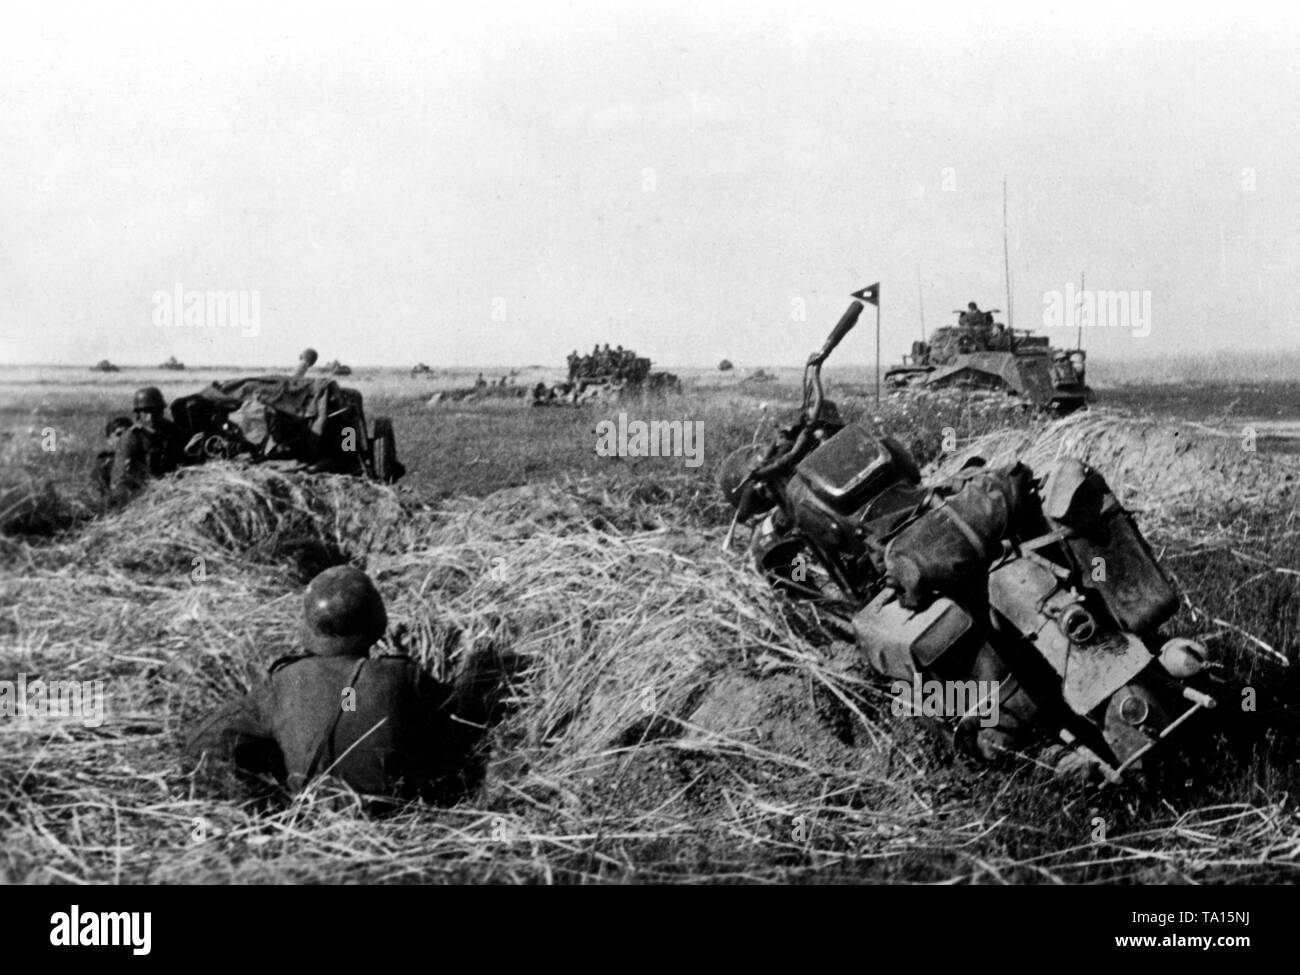 Les chars allemands lors d'une attaque sur les plaines de la région d'Orel (OREL). Au premier plan, un fantassin assis dans un trou de fusil, une moto (probablement une Victoria KR 25 / W) et un canon antichar (probablement une 7,5 cm PaK 40). Plus loin sur la photo, une rangée de chars allemands. Photo de l'entreprise de propagande (PK) : correspondant de guerre Schaefer. Banque D'Images